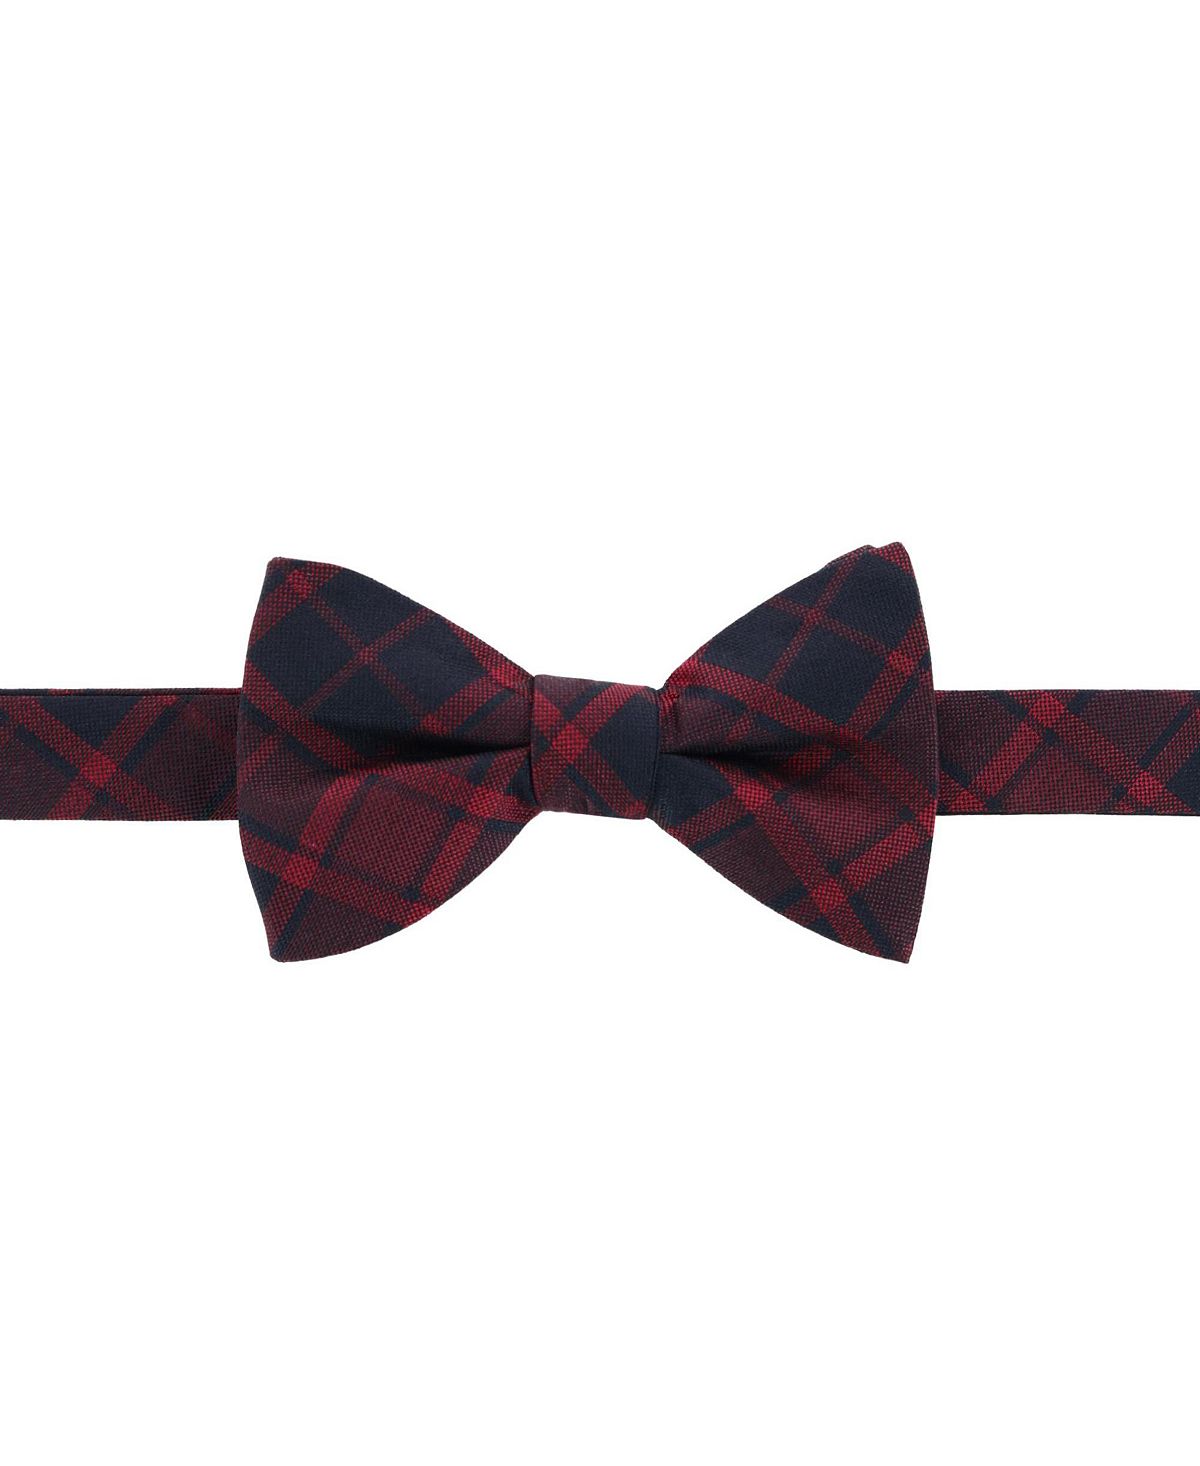 Красный шелковый галстук-бабочка в клетку Kincade Blackwatch TRAFALGAR галстук бабочка мужская бордовая в шотландскую клетку